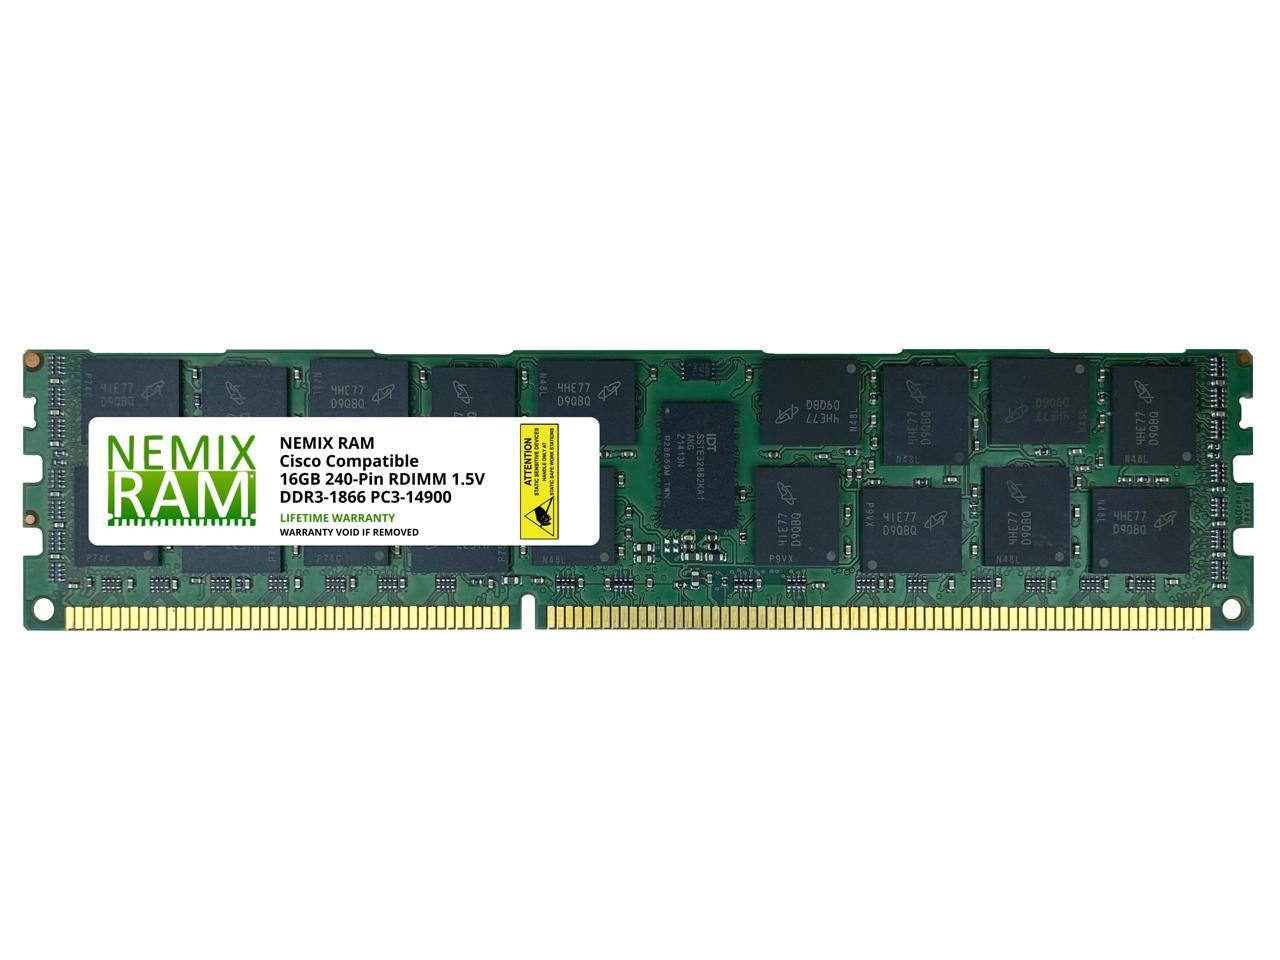 UCS-MR-1X162RZ-A 16GB PC3-14900R 1866MHz Memory UCS B200 M3; C220 M3 ; C240 M3 